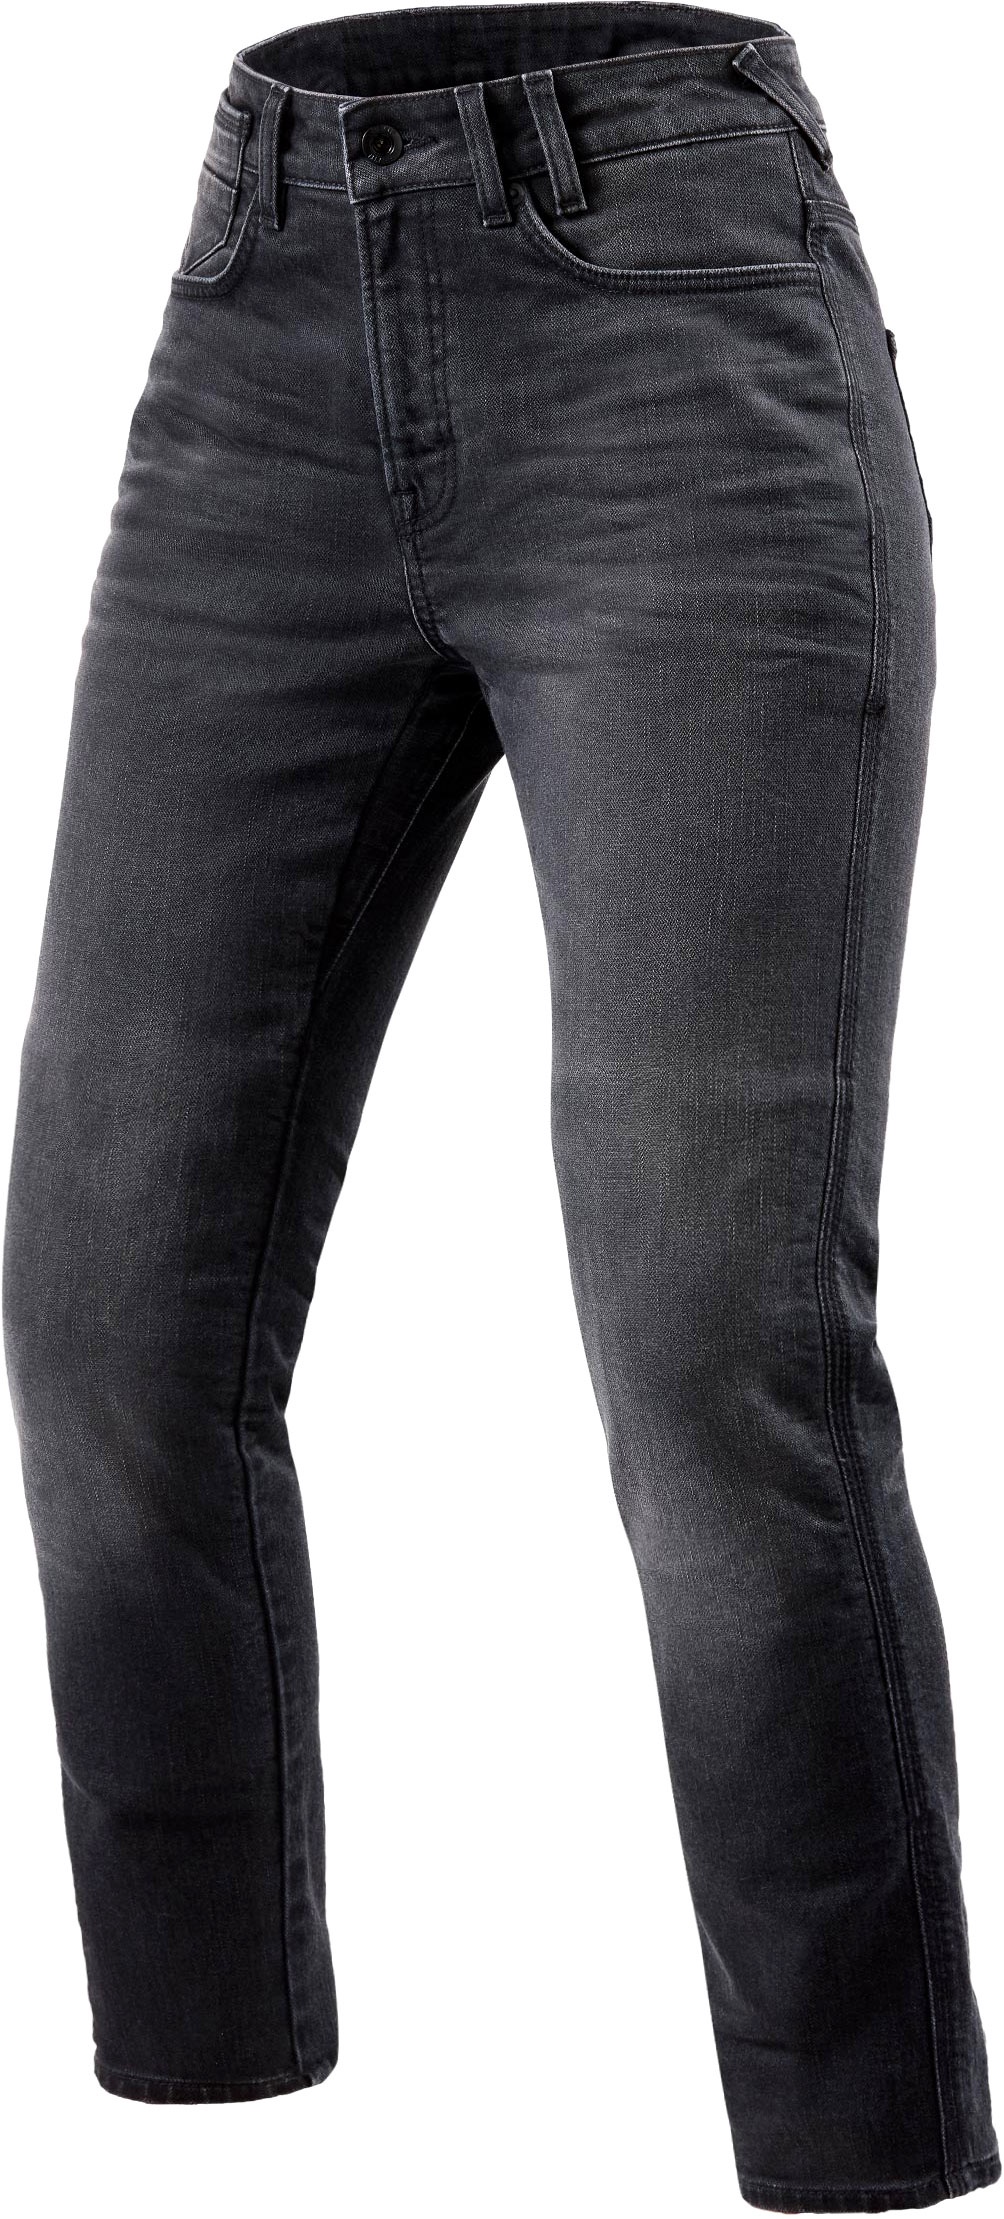 Revit Victoria 2, jeans femmes - Gris - W32/L30